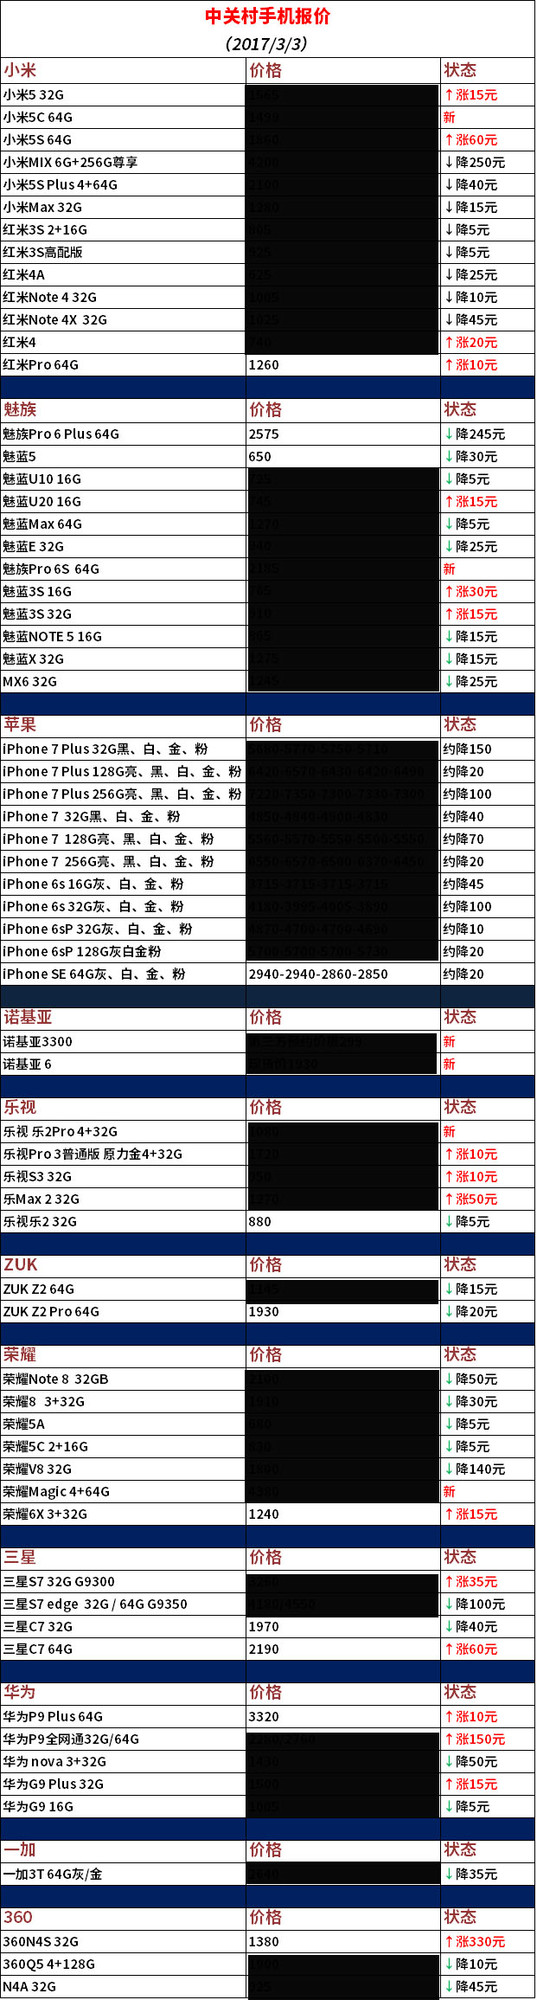 这周价格趋势 iPhone 6s市场价直追4000元